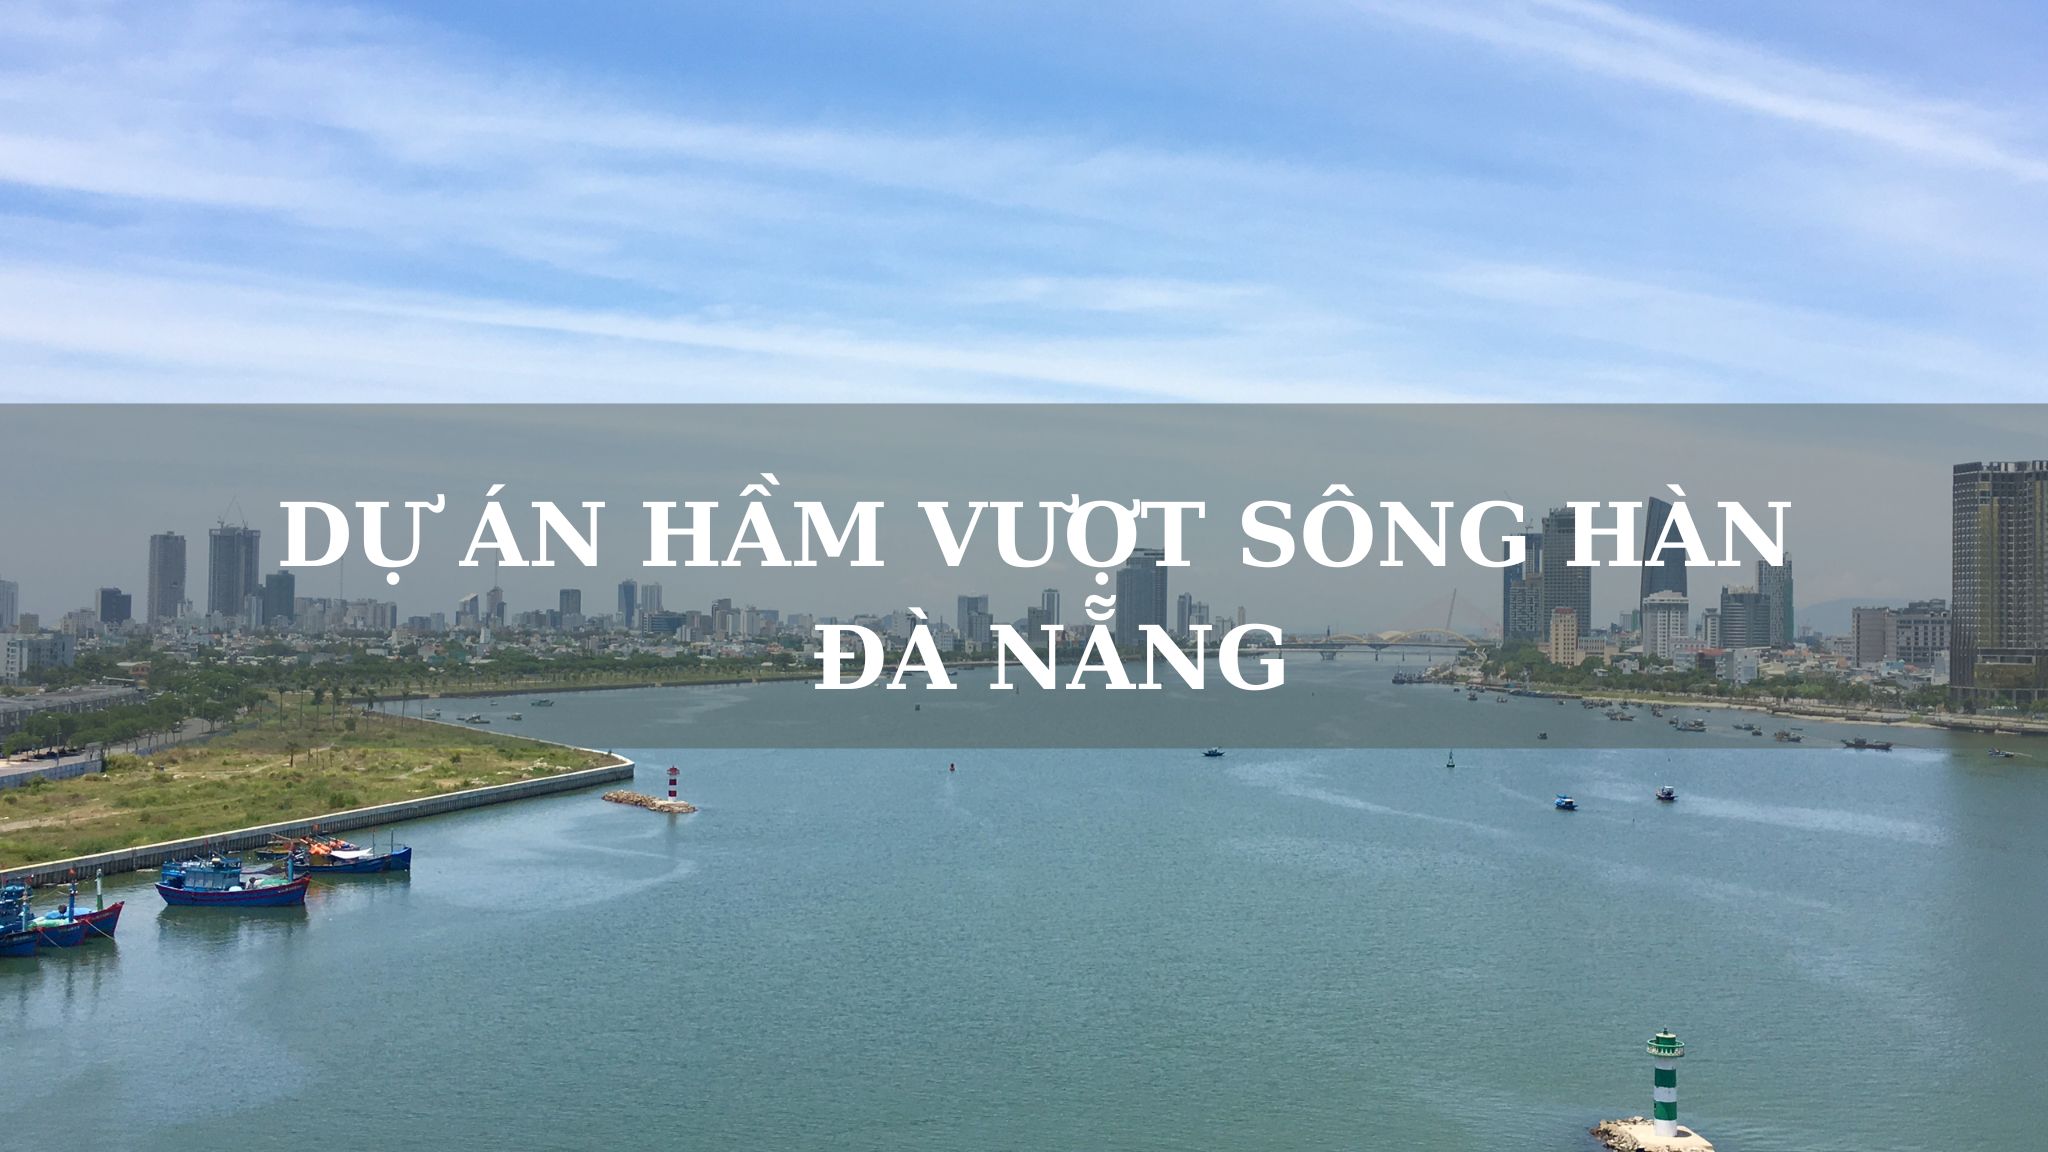 Hầm qua sông Hàn - Dự án trọng điểm của Đà Nẵng giai đoạn 2021 – 2030